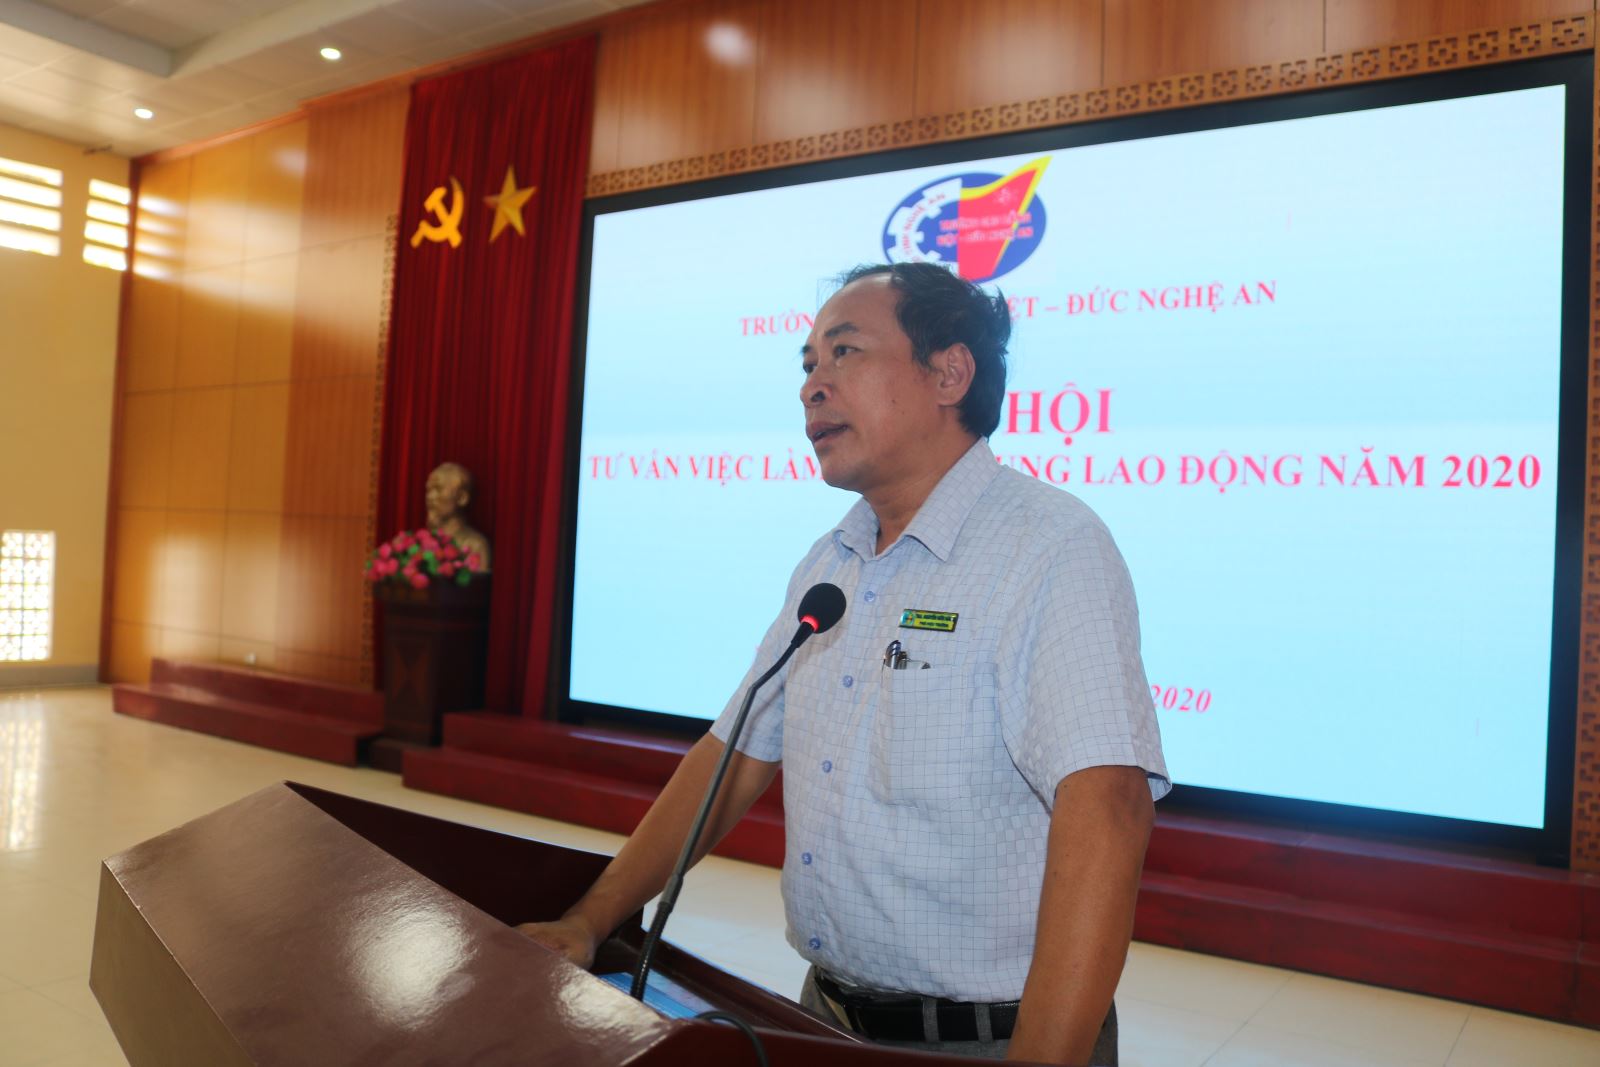 Trường Cao đẳng Việt - Đức Nghệ An tổ chức Ngày hội tư vấn việc làm, tuyển dụng lao động năm 2020